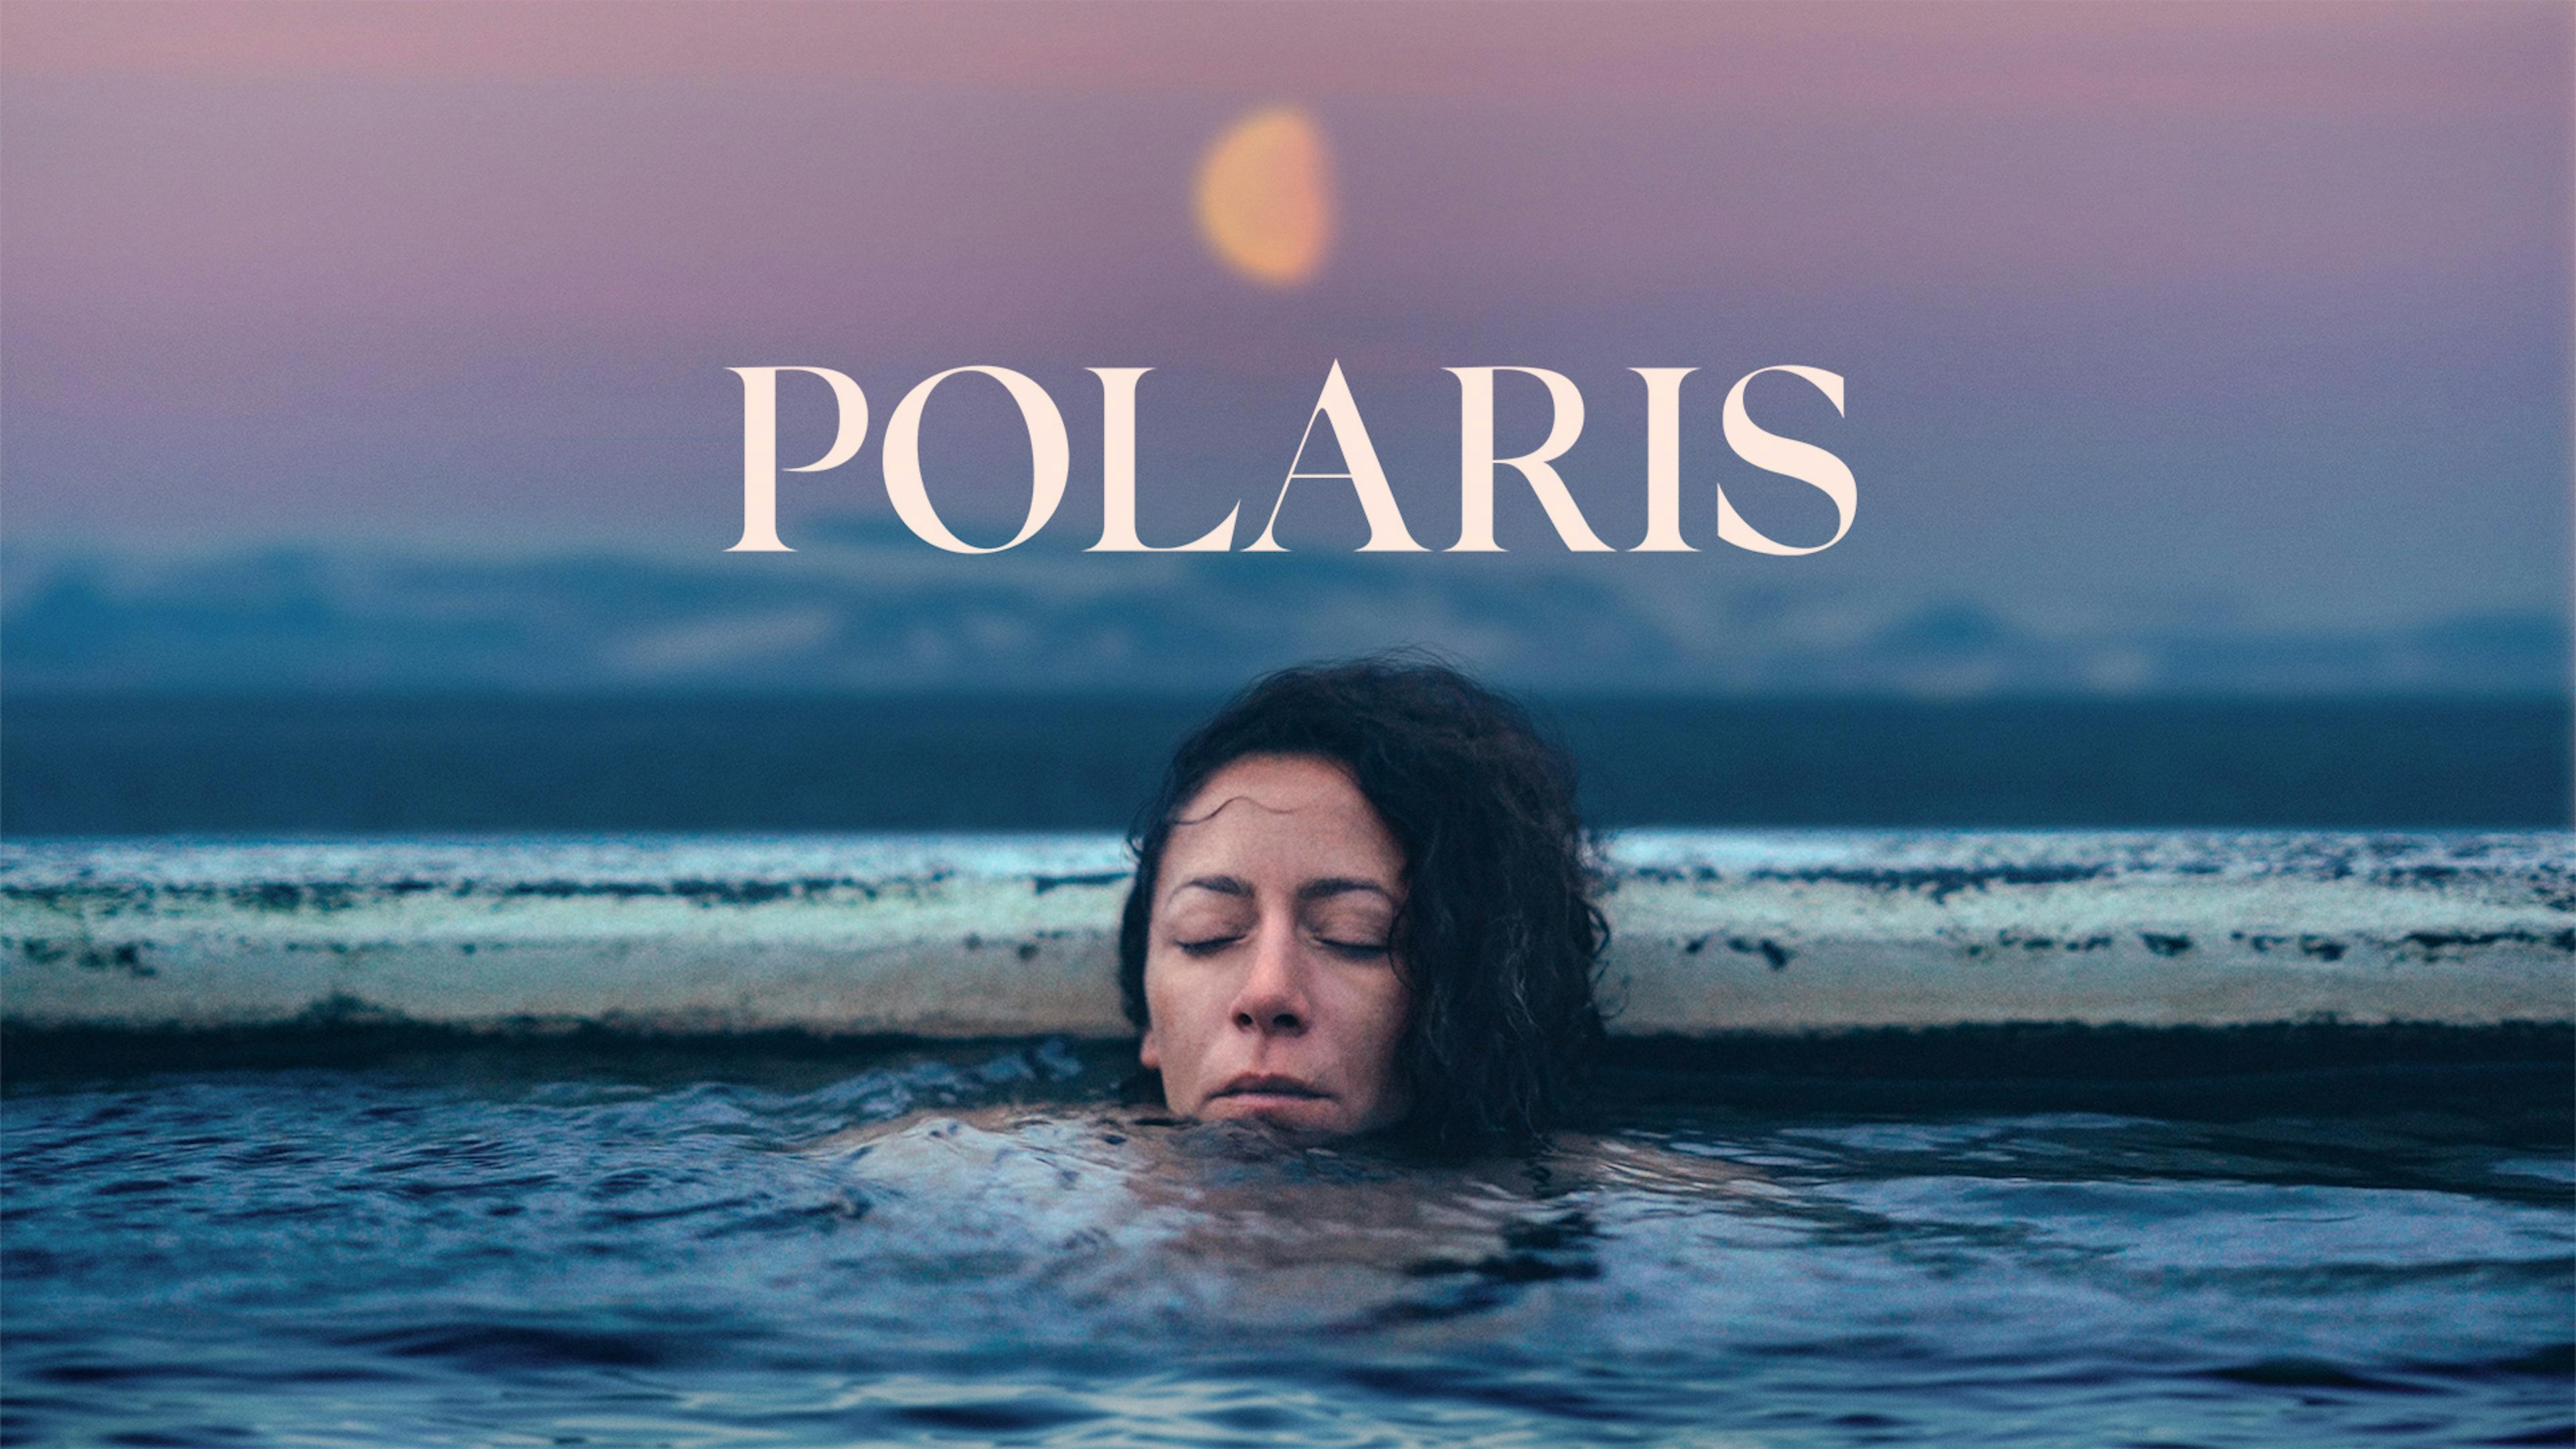 Polaris - Ainara Vera - Arktis - Dokumentarfilm